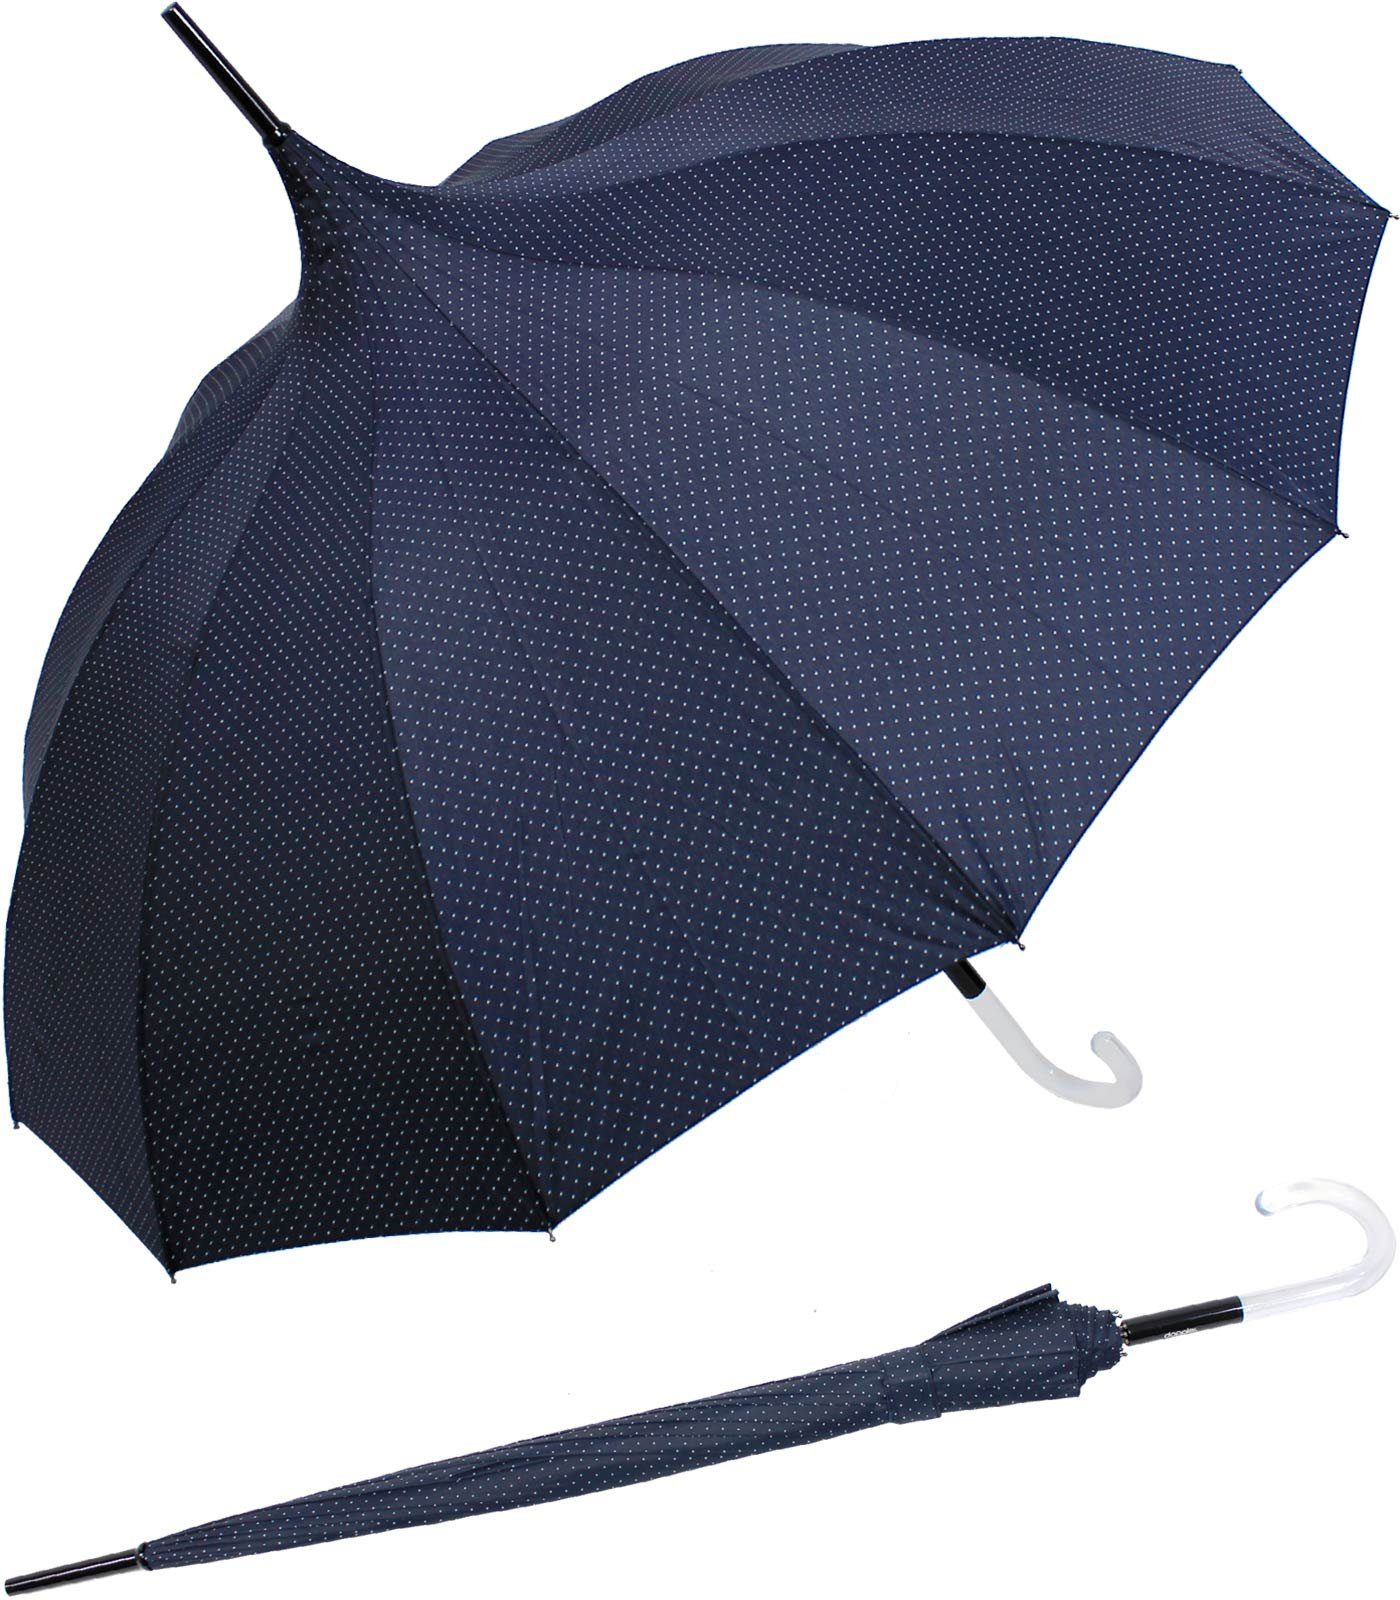 Pagodenform blau Auf-Automatik, mit dezenten Langregenschirm geformter auffällig Punkten mit doppler® elegante Damenschirm